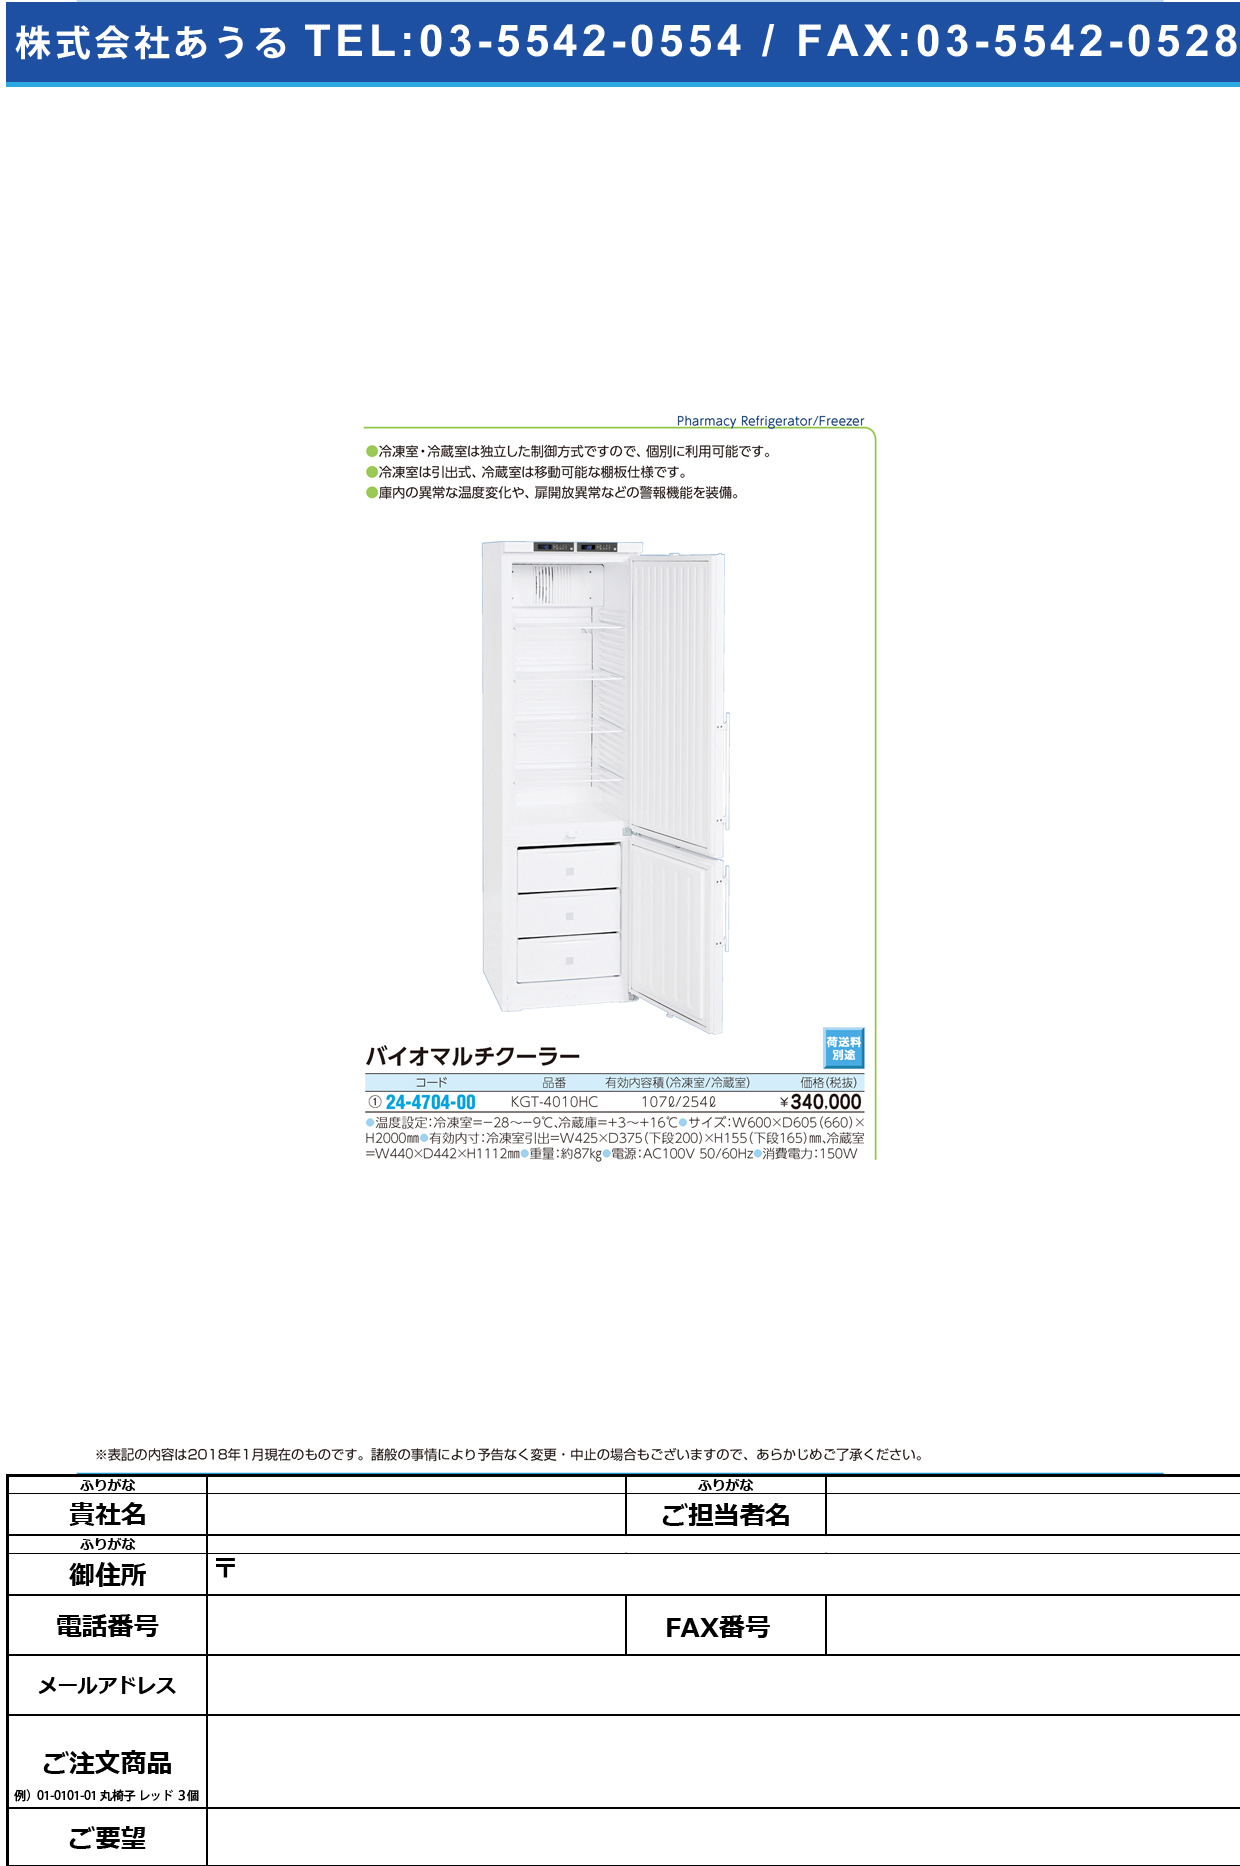 (24-4704-00)バイオマルチクーラー KGT-4010HC ﾊﾞｲｵﾏﾙﾁﾙｸｰﾗｰ(日本フリーザー)【1台単位】【2018年カタログ商品】